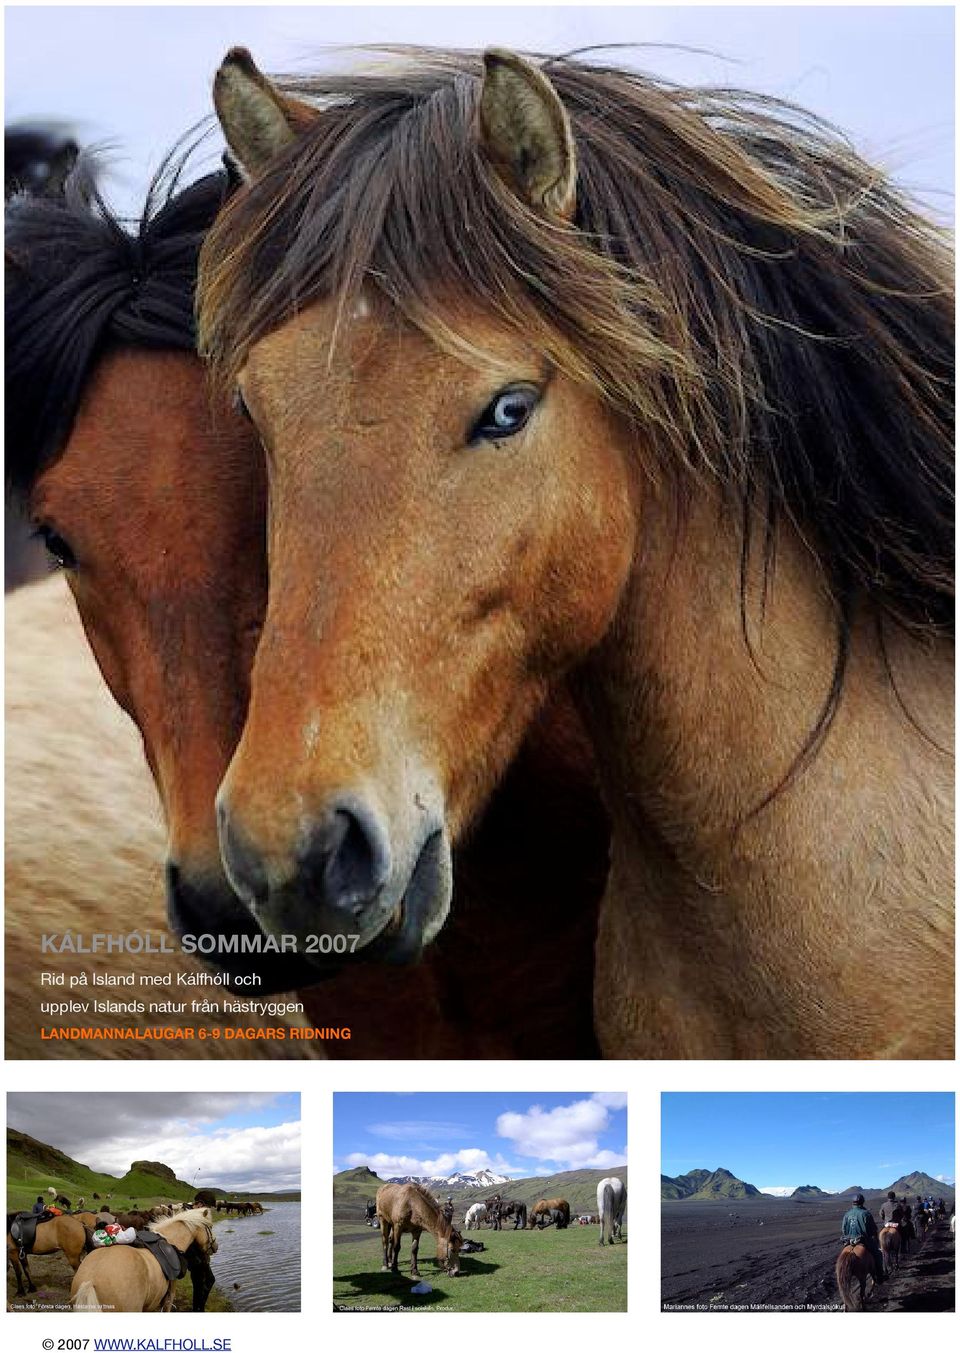 Islands natur från hästryggen